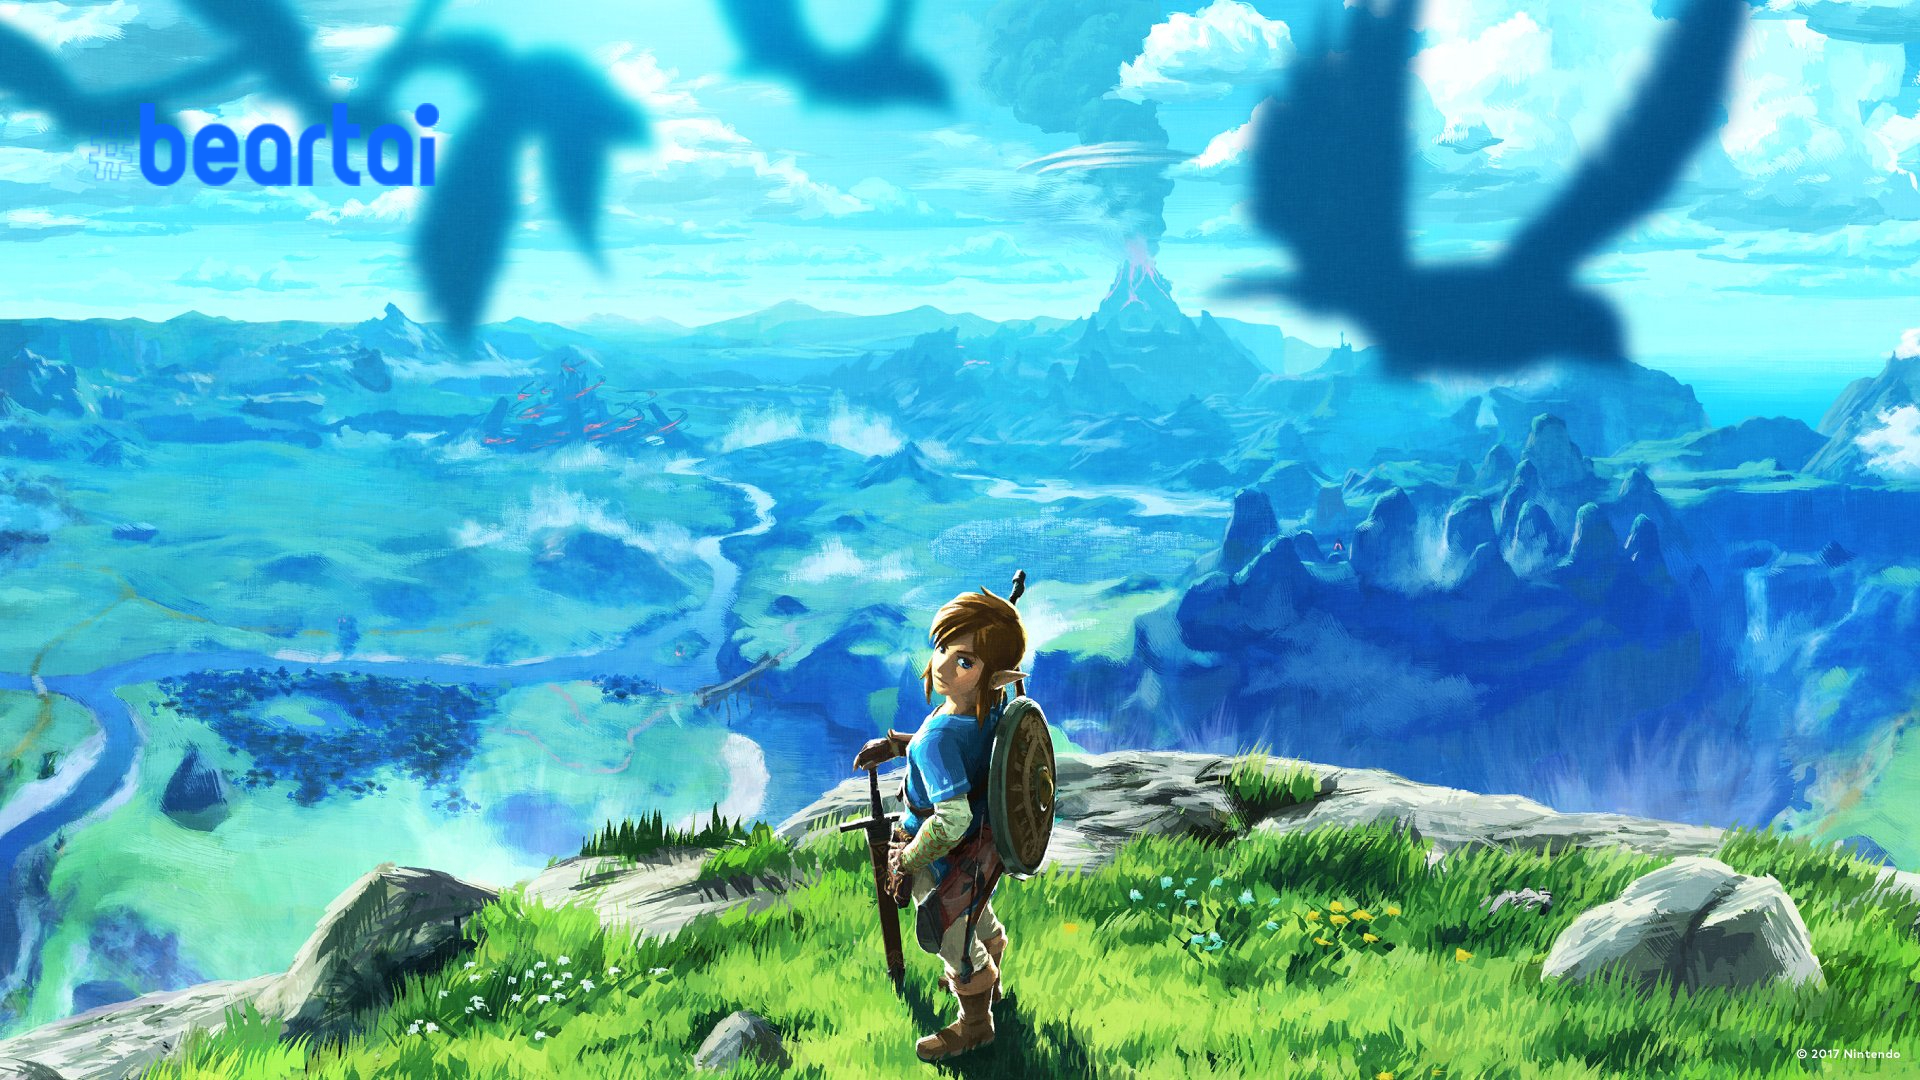 โปรดิวเซอร์ The Legend of Zelda เผย ภาคต่อ Breath of the Wild คงต้องรออีกพักใหญ่